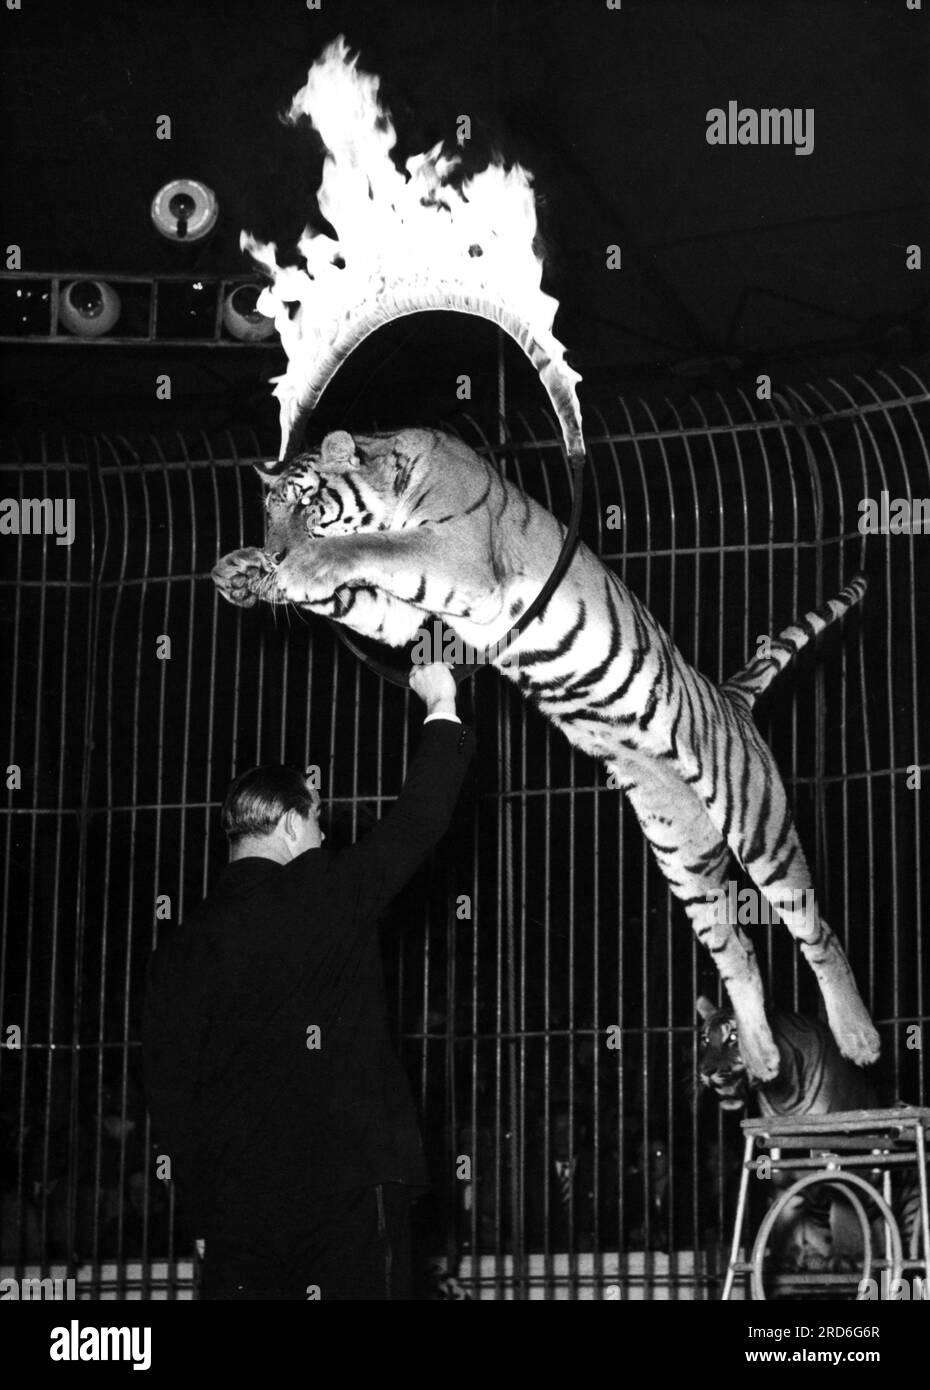 zirkus, Dressur, Tiger, der durch den brennenden Ring springt, 1950er, ZUSÄTZLICHE-RECHTE-FREIGABE-INFO-NICHT-VERFÜGBAR Stockfoto